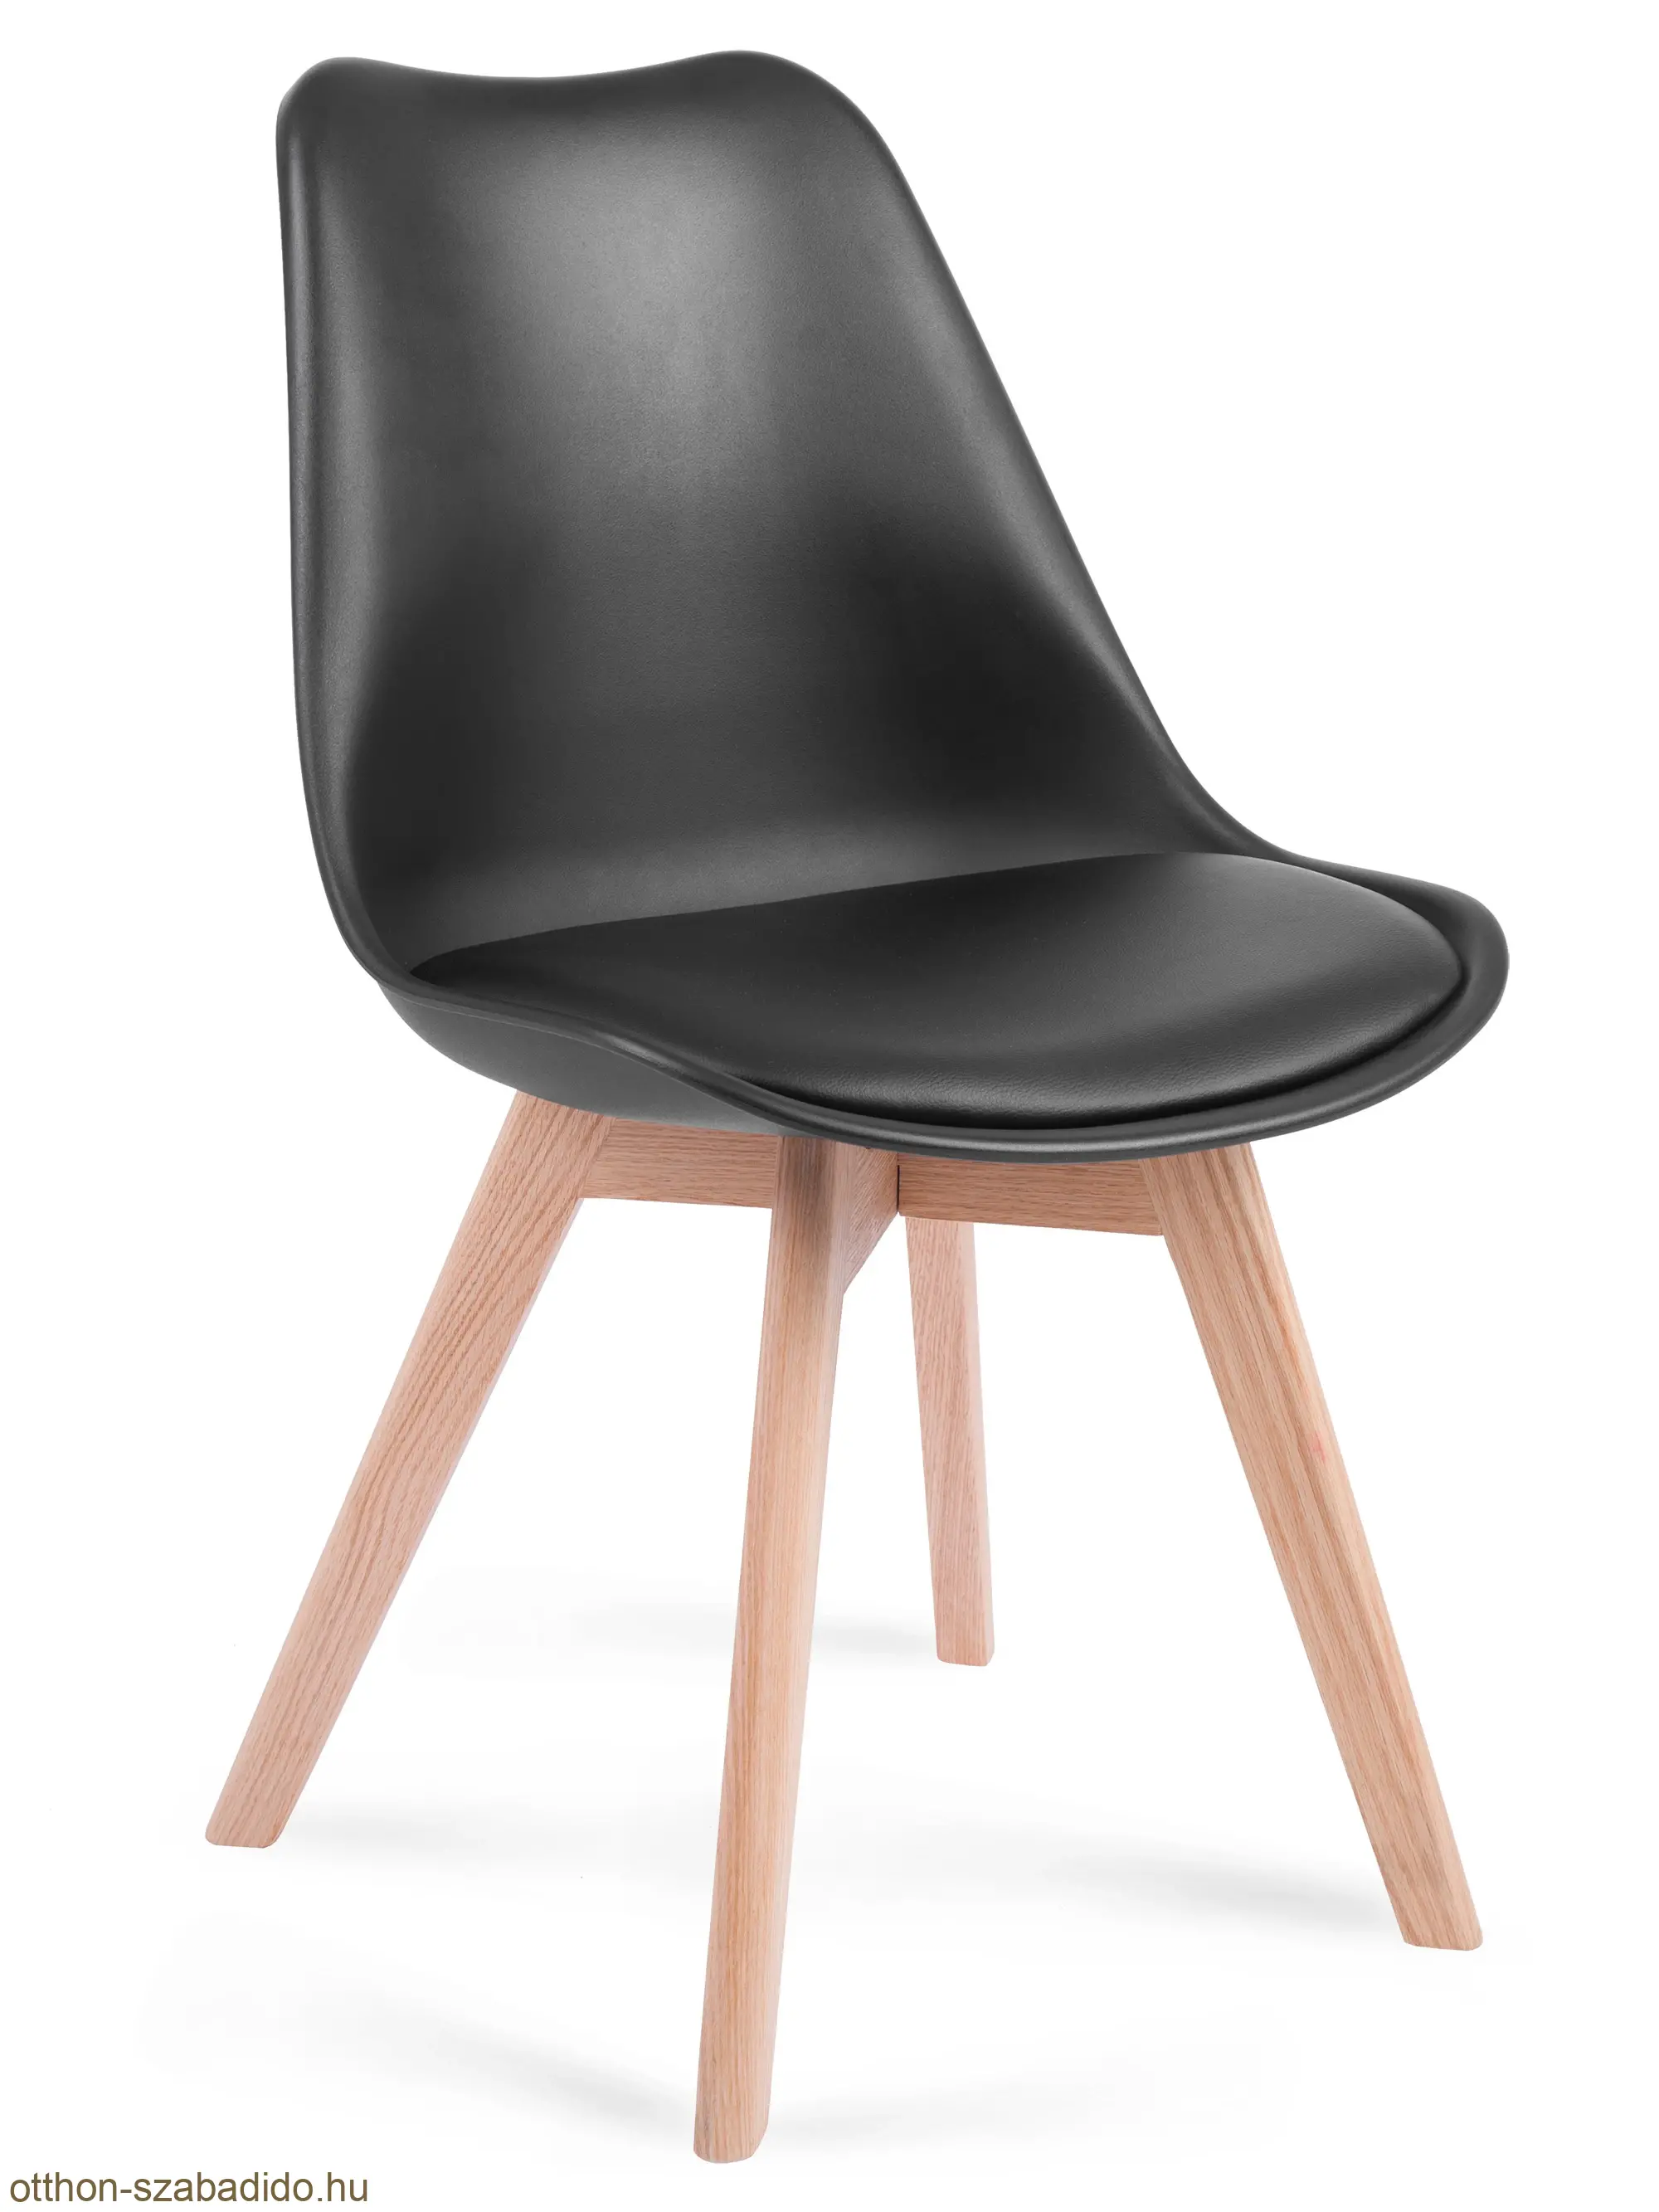 SOFOTEL modern skandináv stílusú műbőr szék, Ponti fekete